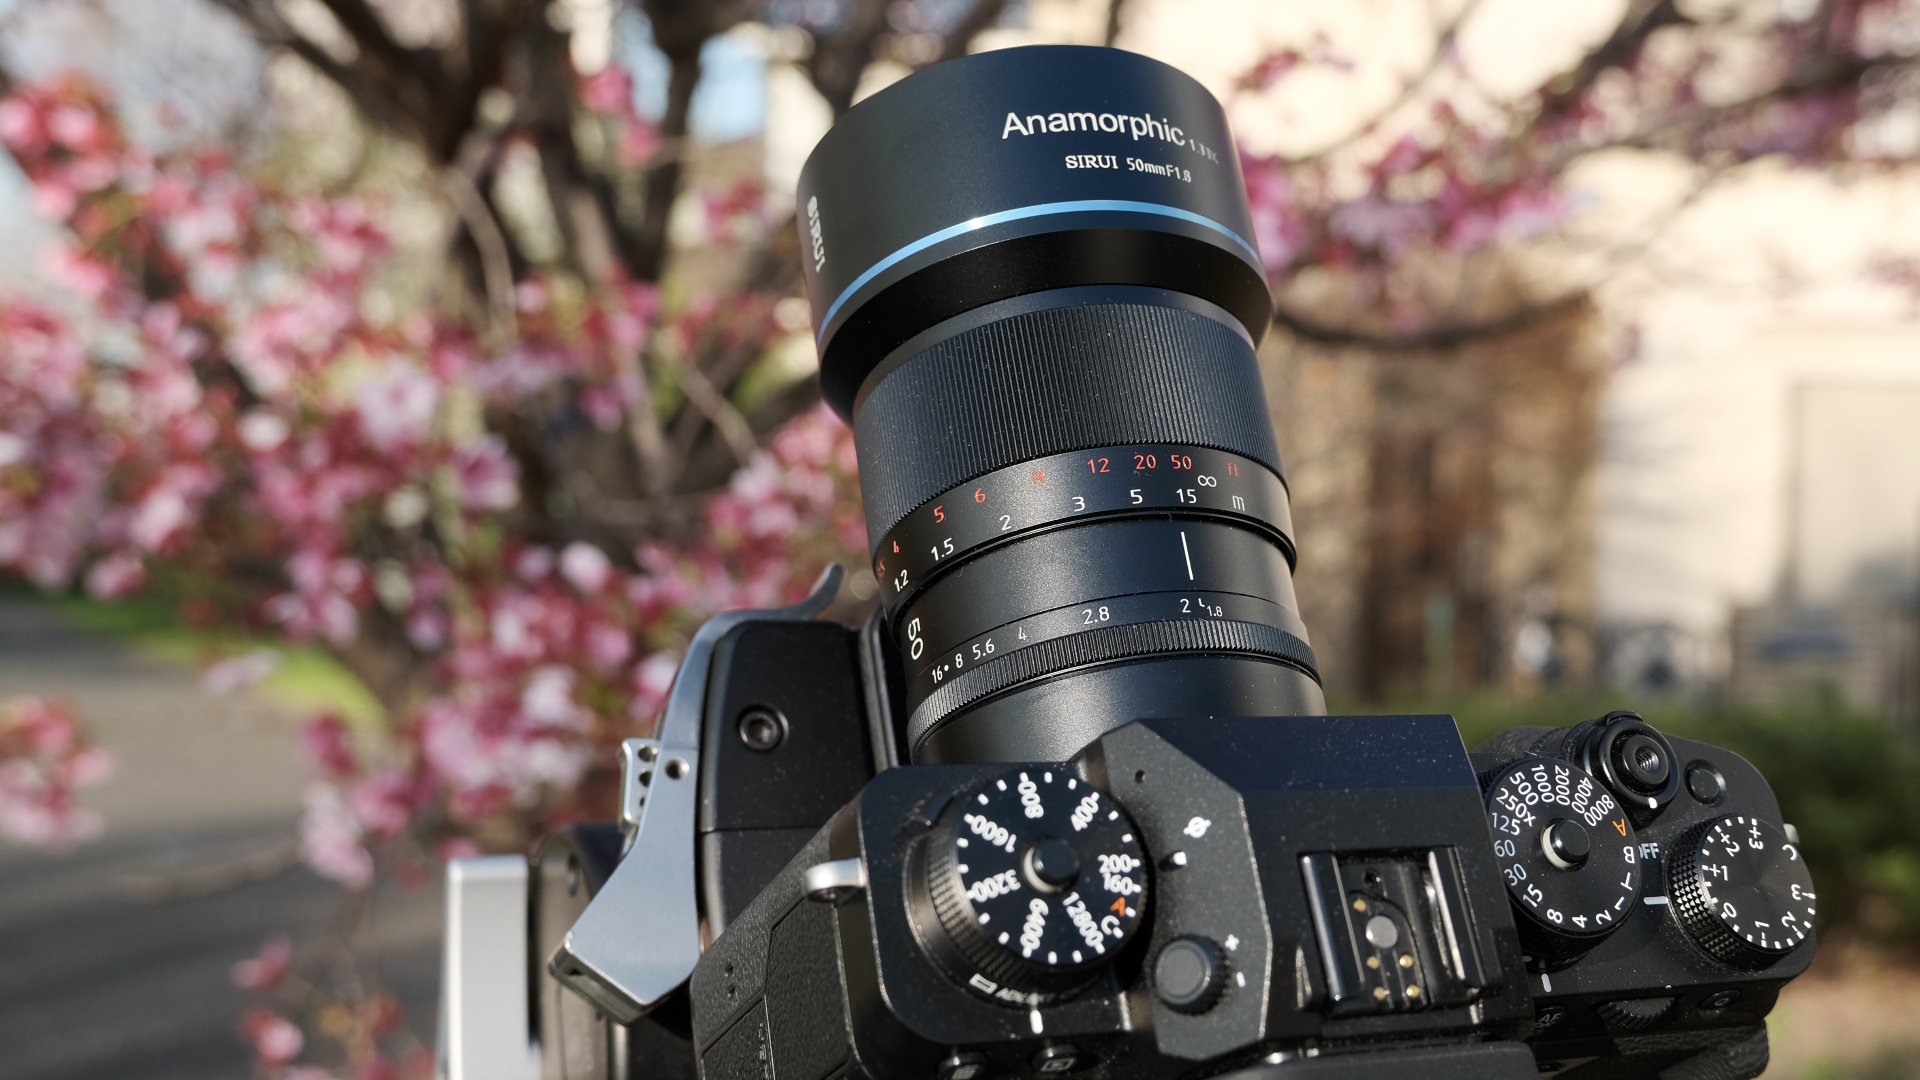 Nueva Fujifilm X-T4: ¿Merece la pena? – MEDIA+MEDIA producciones